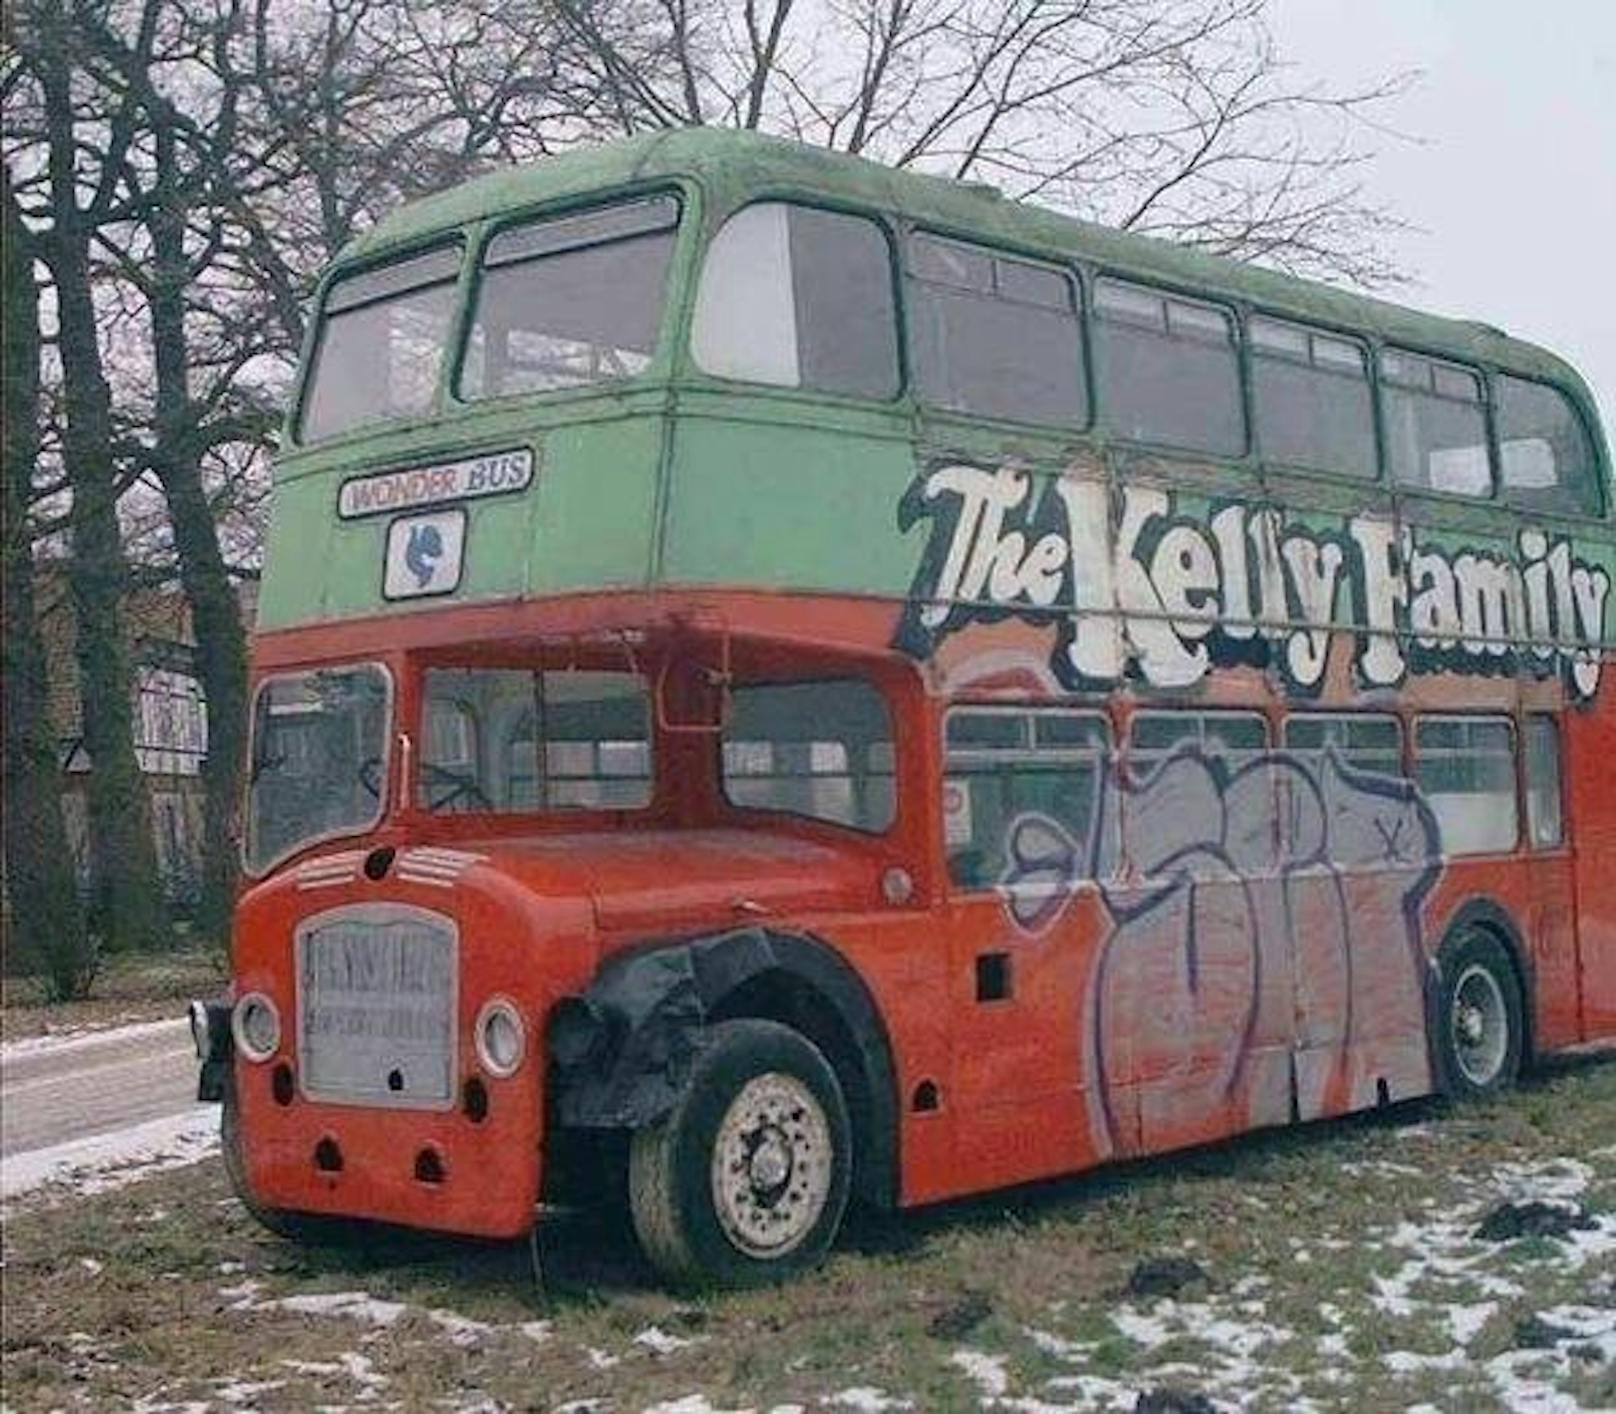 So sah der Tourbus der Kelly Family vor der Restauration aus.